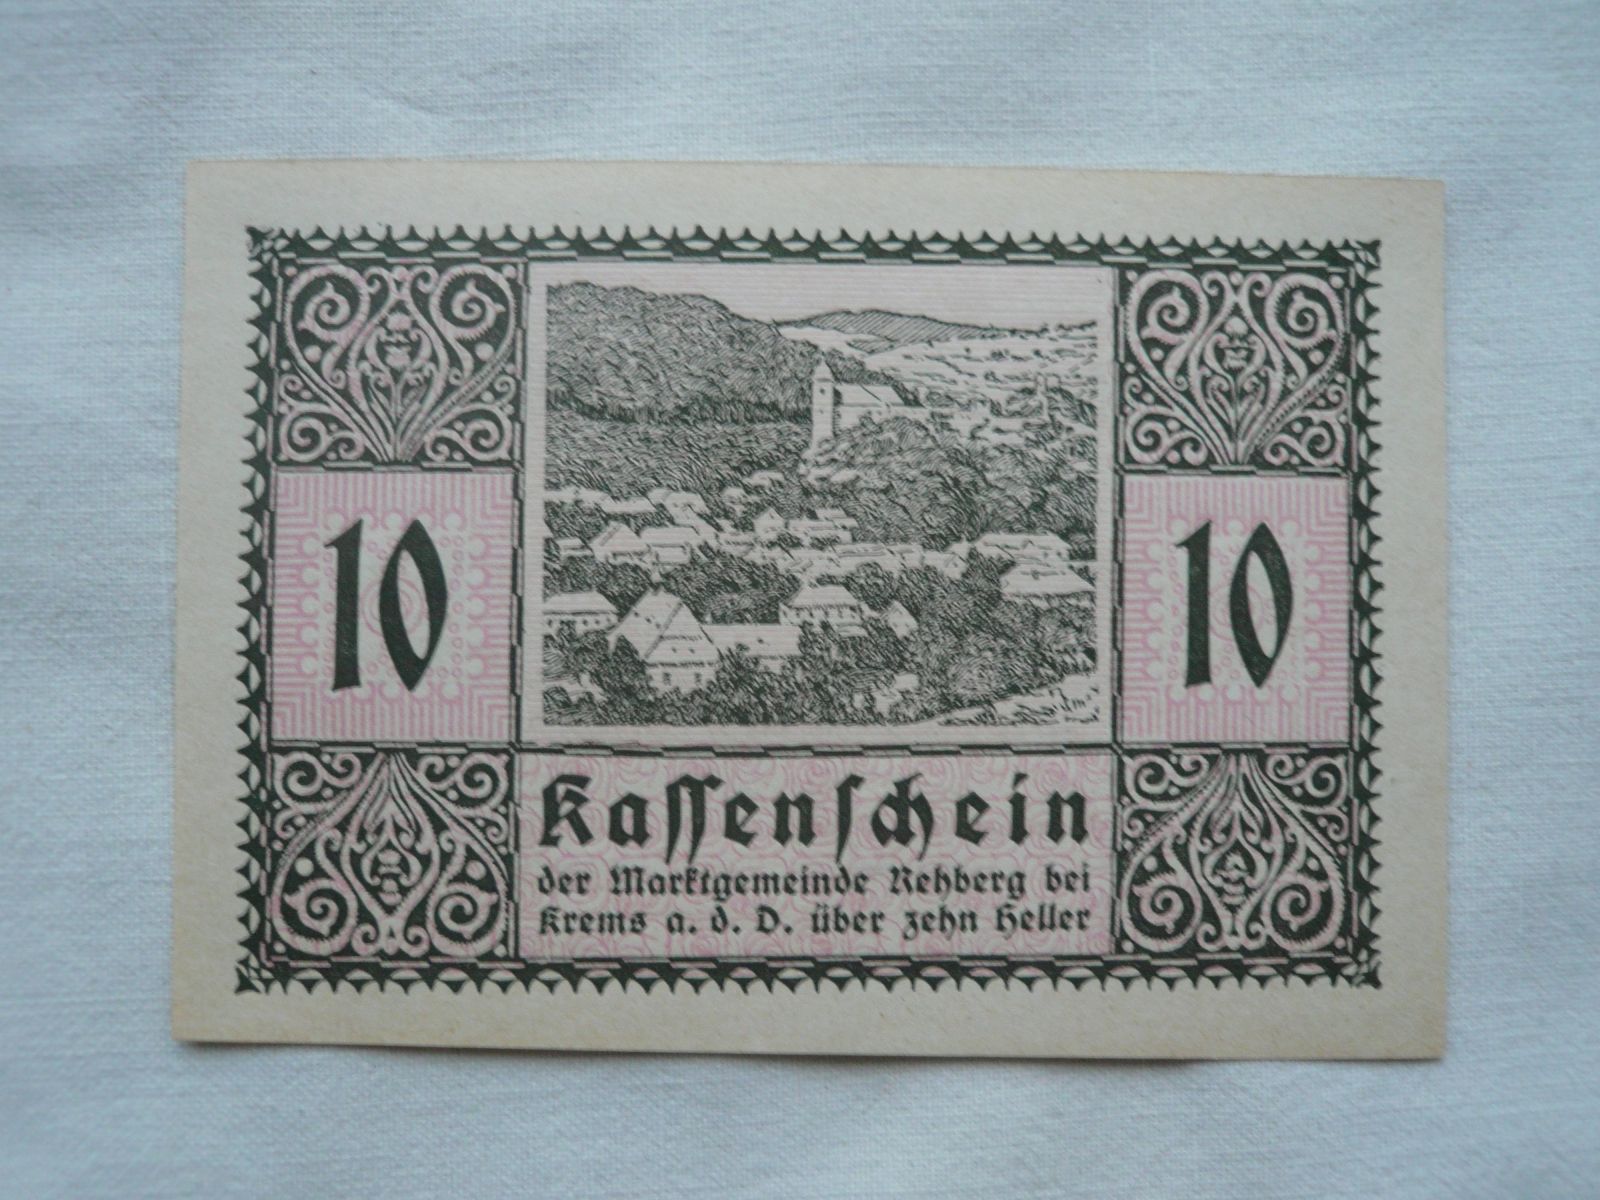 10 Heller, Kassenschein 1920 Rakousko